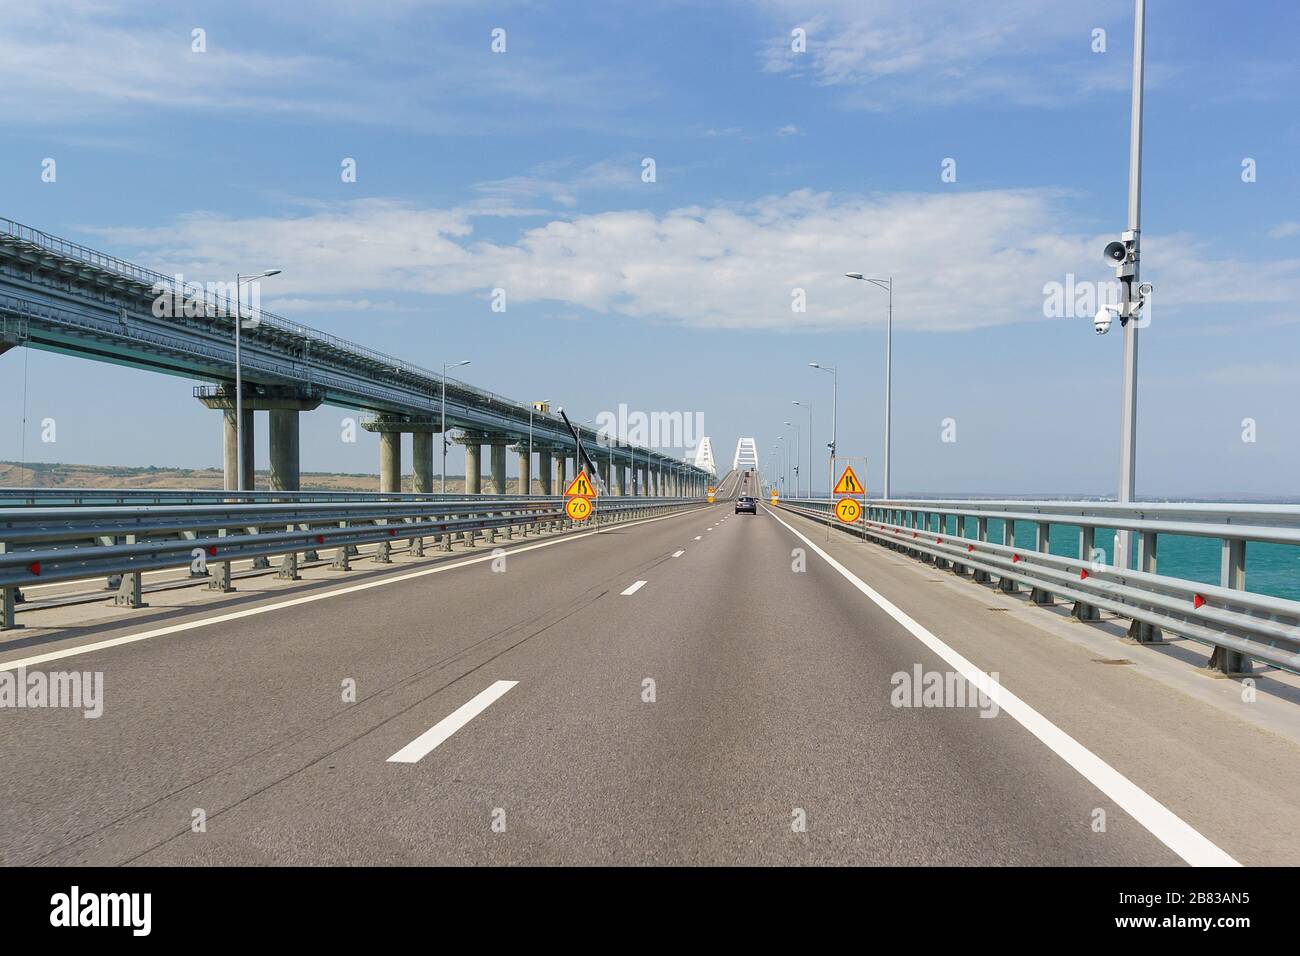 Panneaux de limitation de vitesse du véhicule et lignes de route en raison de réparations d'entretien. Pont de Crimée traversant le détroit de Kerch Banque D'Images